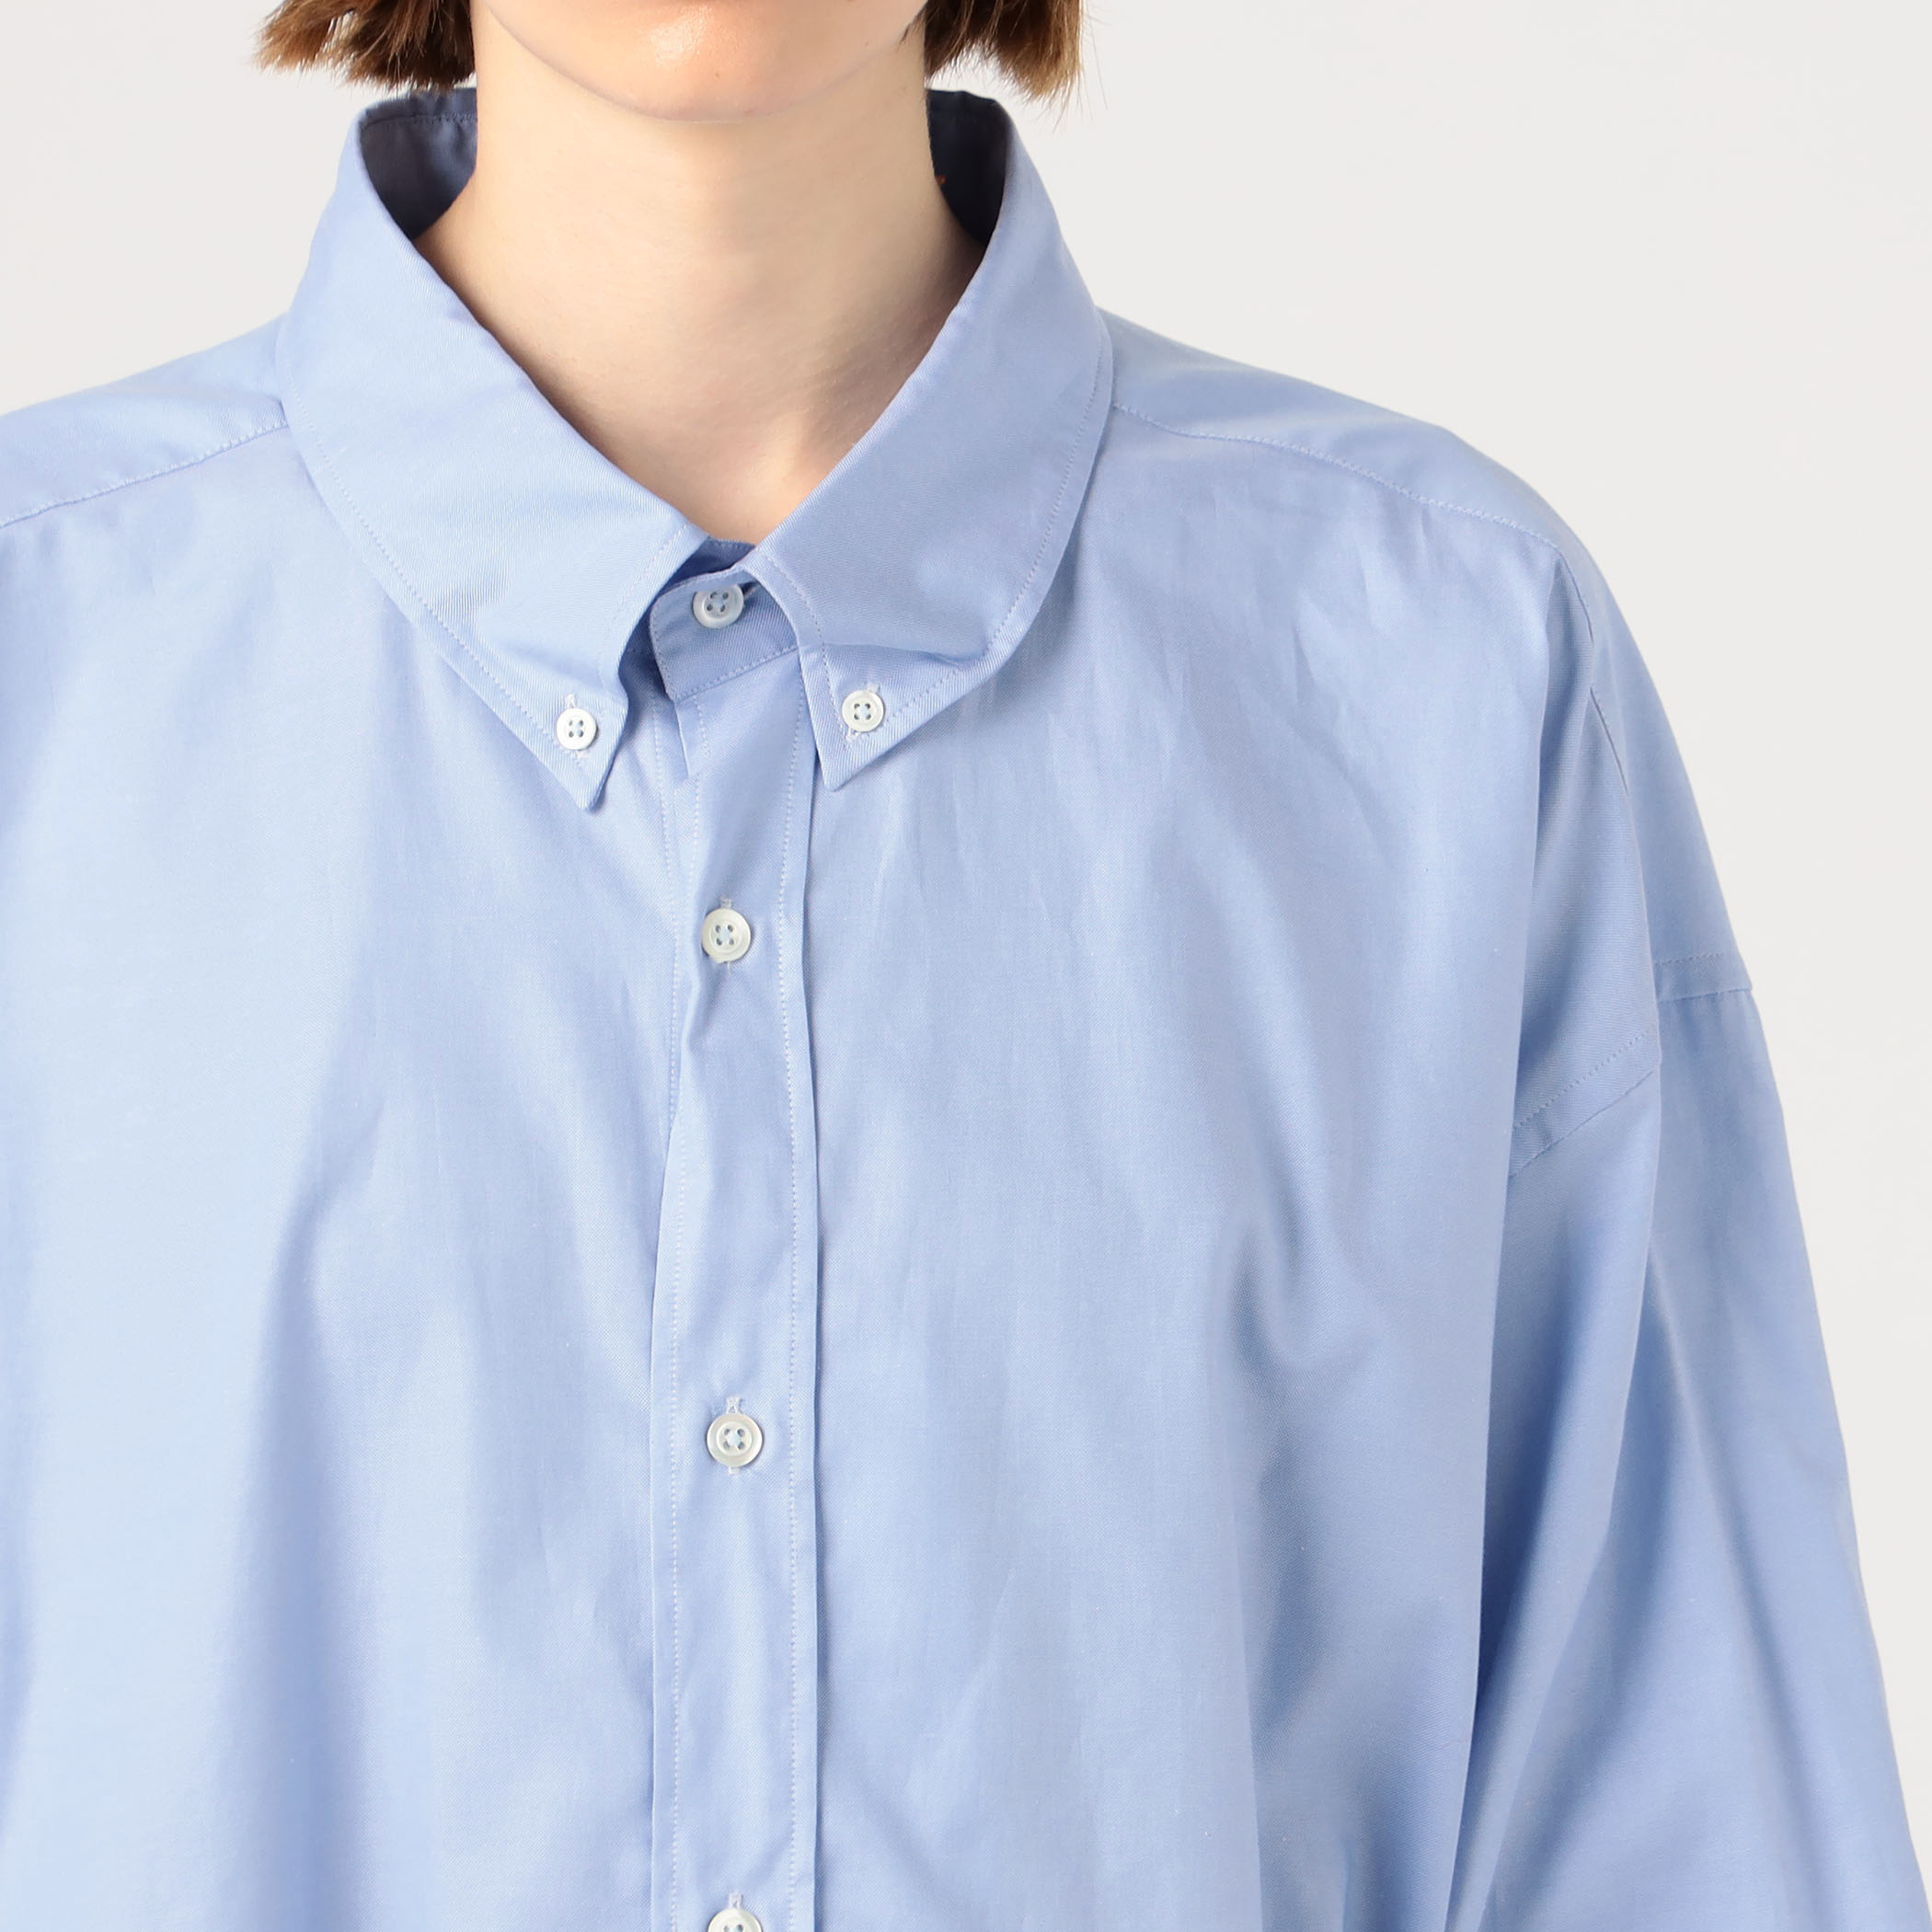 【新品未使用品】マルタンマルジェラ ブルーシャツ 綿 40